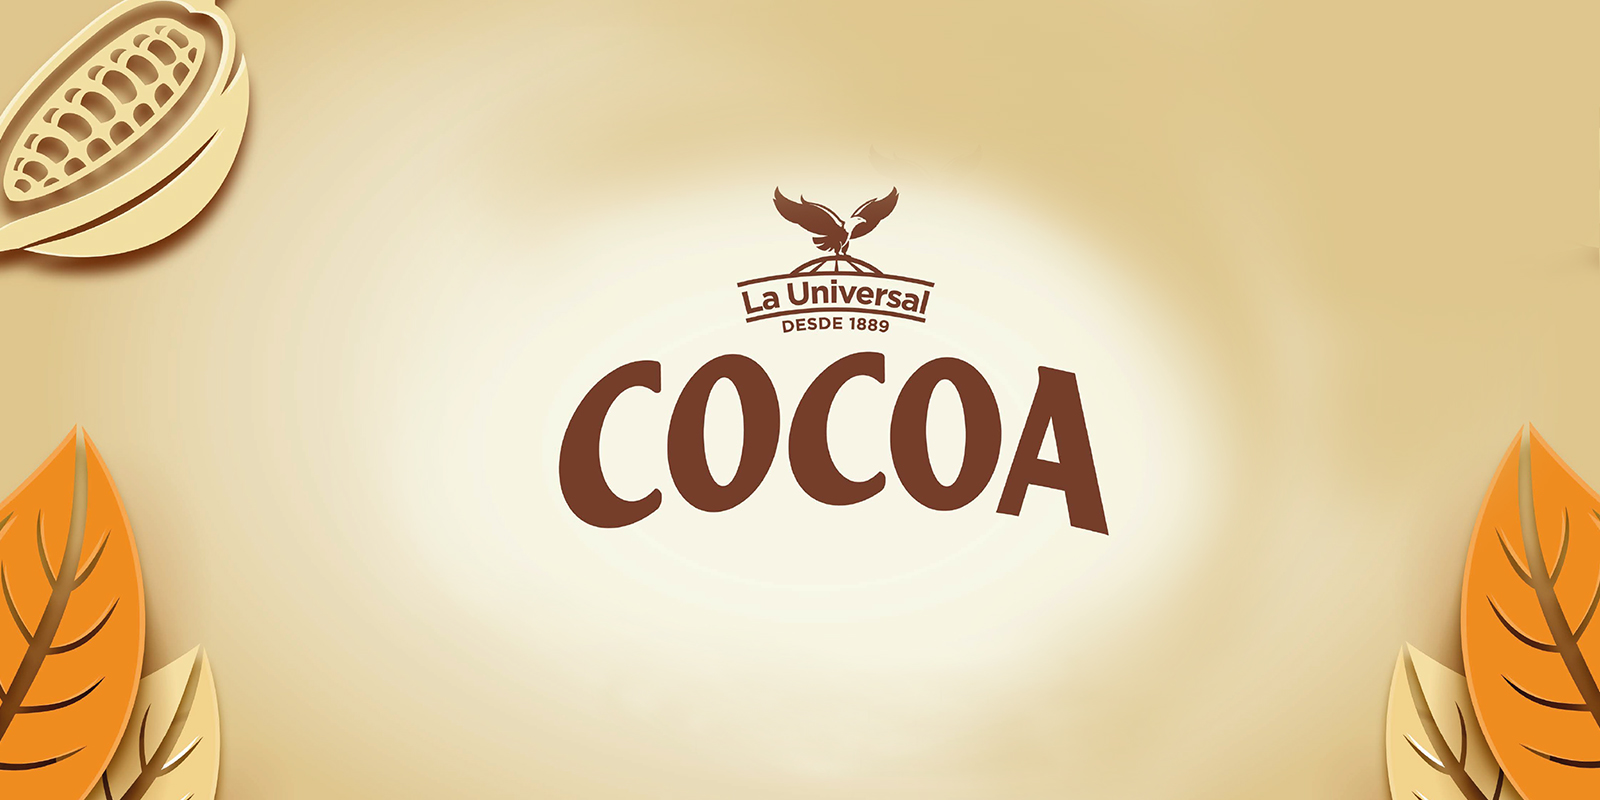 Nuevo logo de Cocoa La Universal. Diseño por Tridimage.